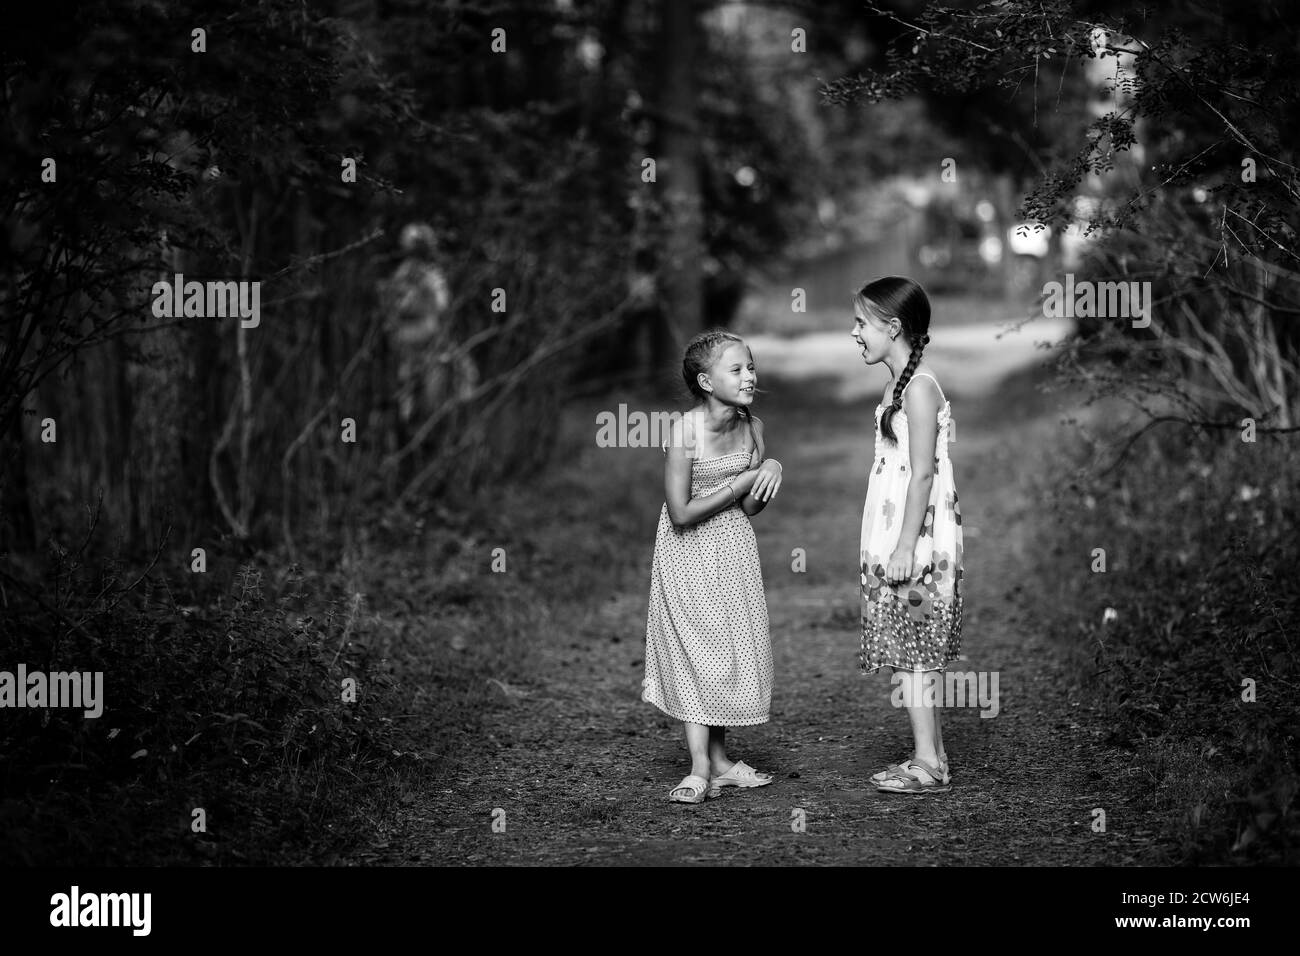 Deux petites filles dans la forêt de pins. Photo en noir et blanc. Banque D'Images